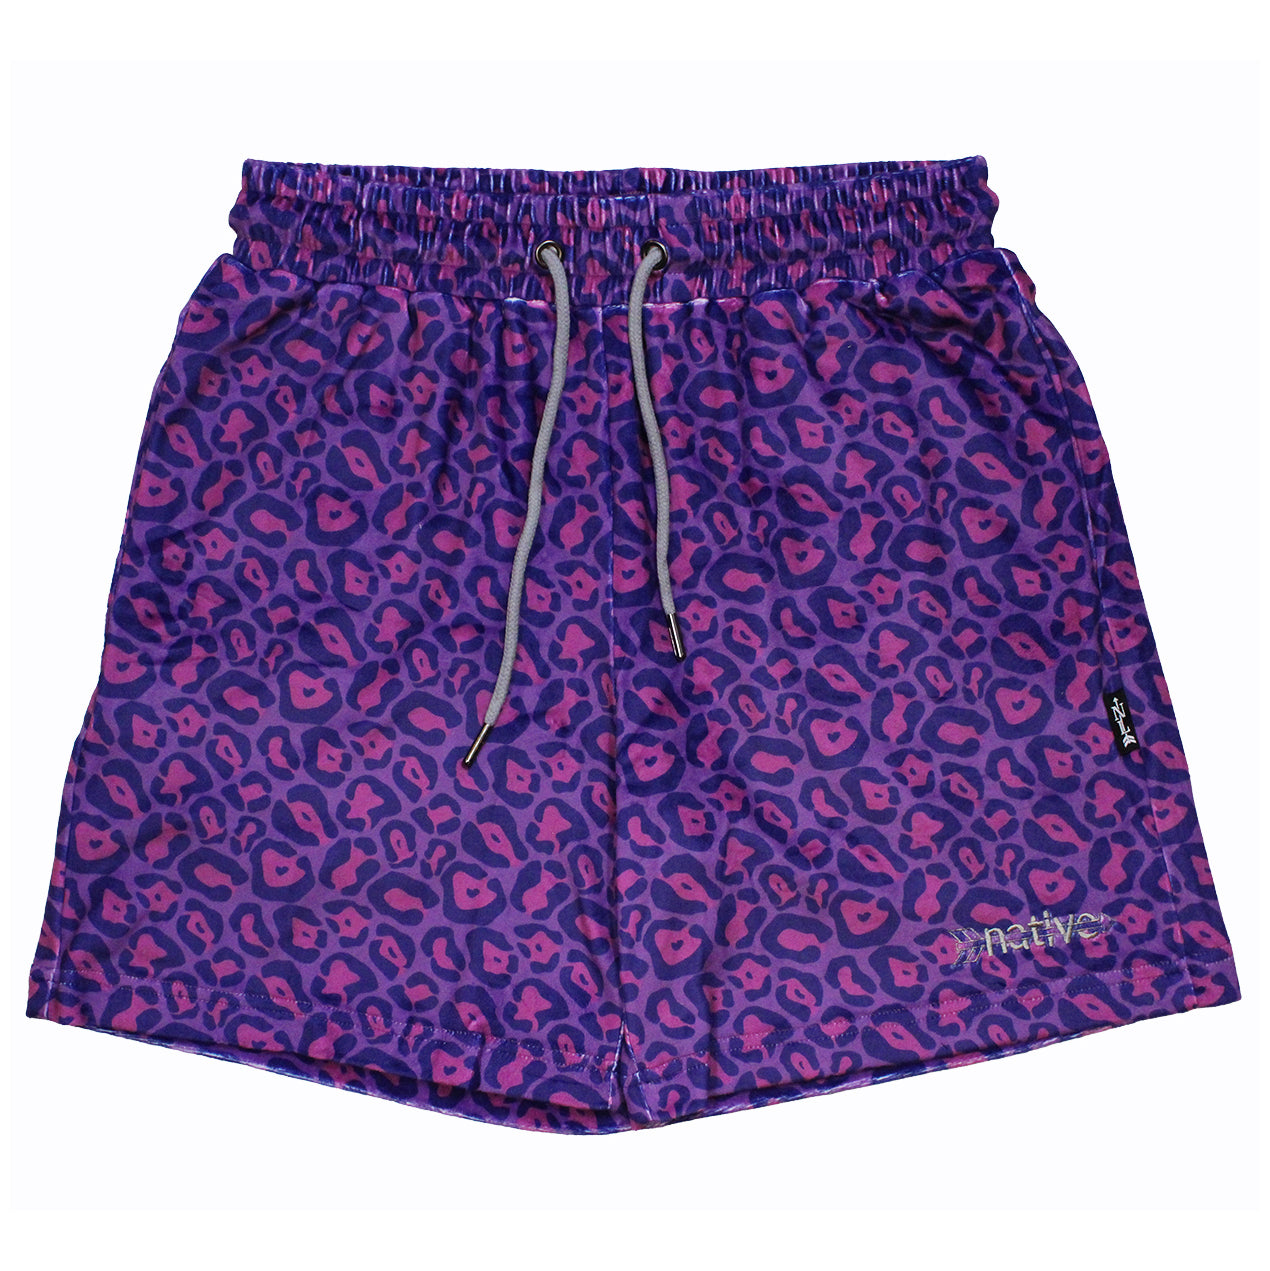 leopard velour shorts in purple